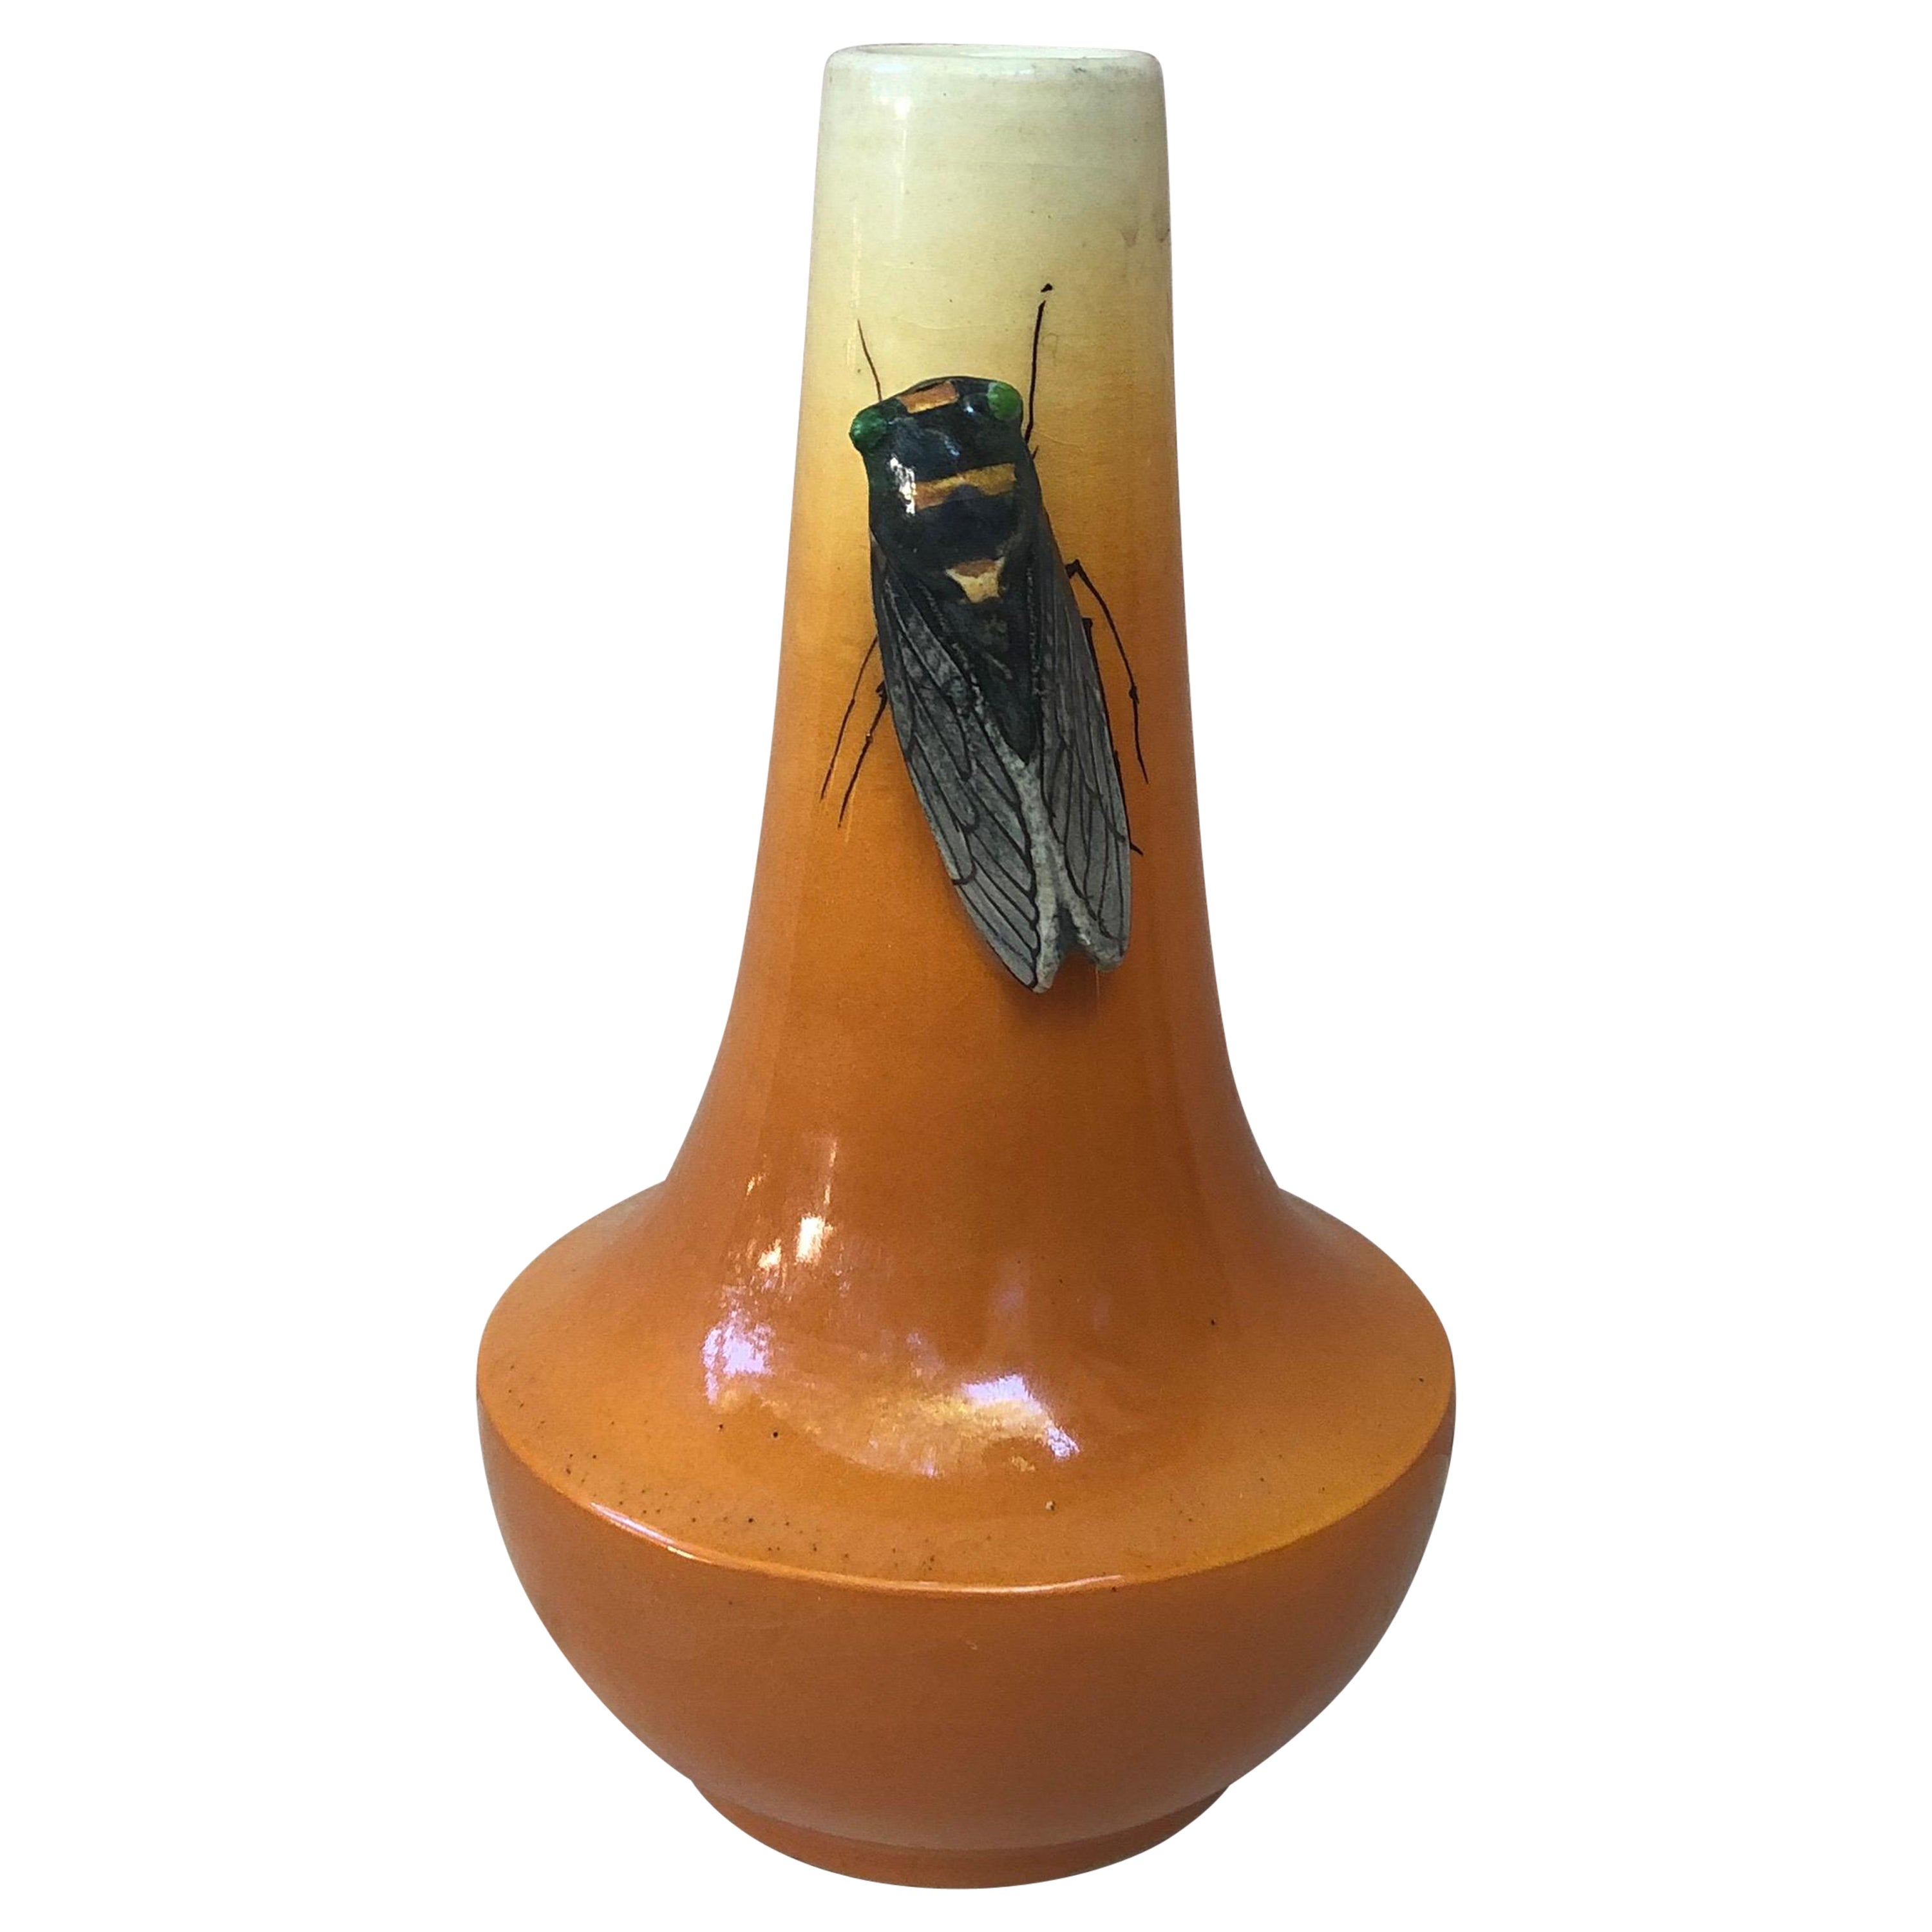 Majolika-Vase mit Cicada Sicard, um 1950